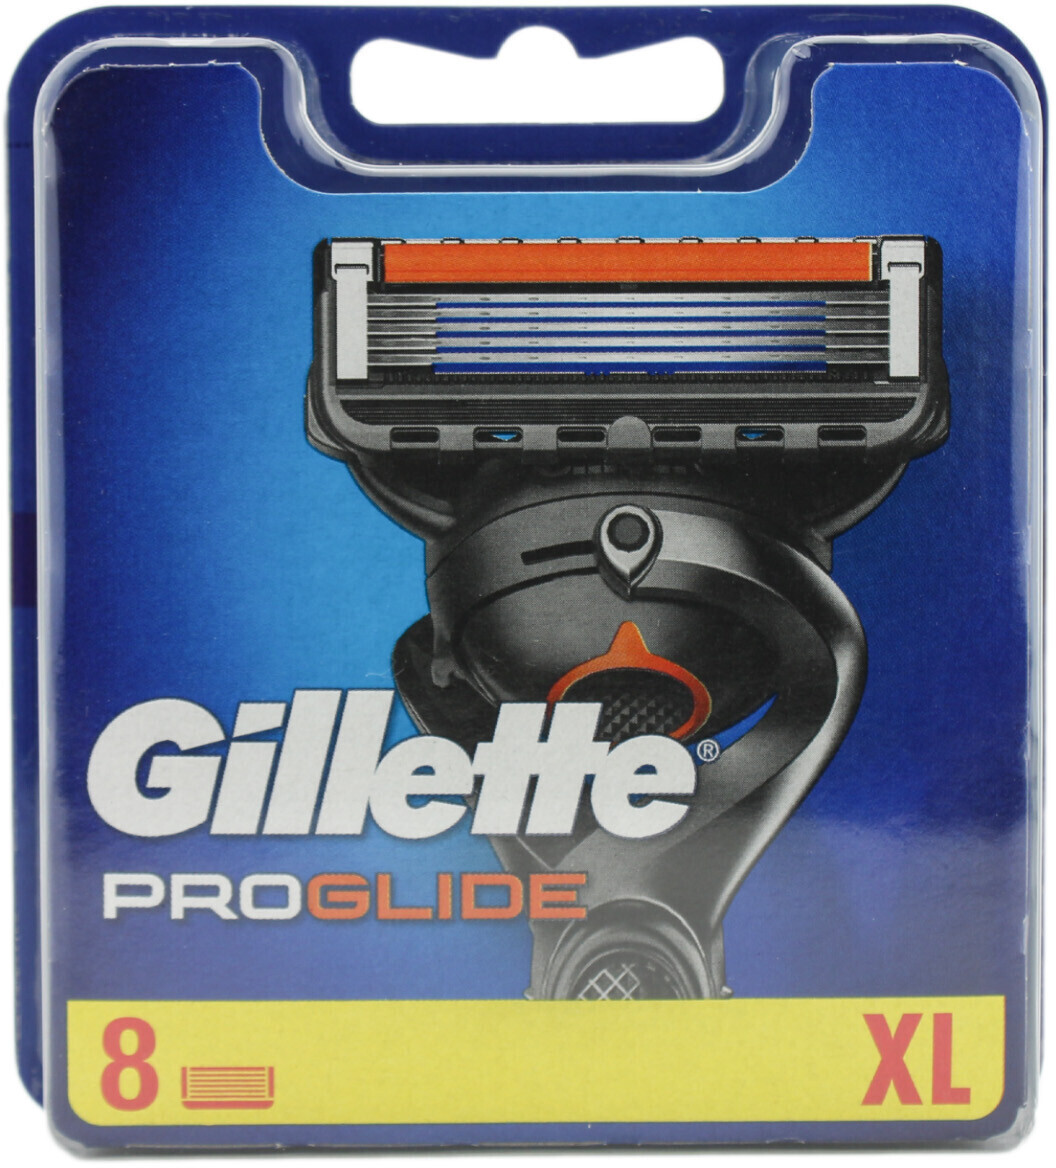 Gillette Fusion 5 ProGlide Razor Blades (8 pcs)